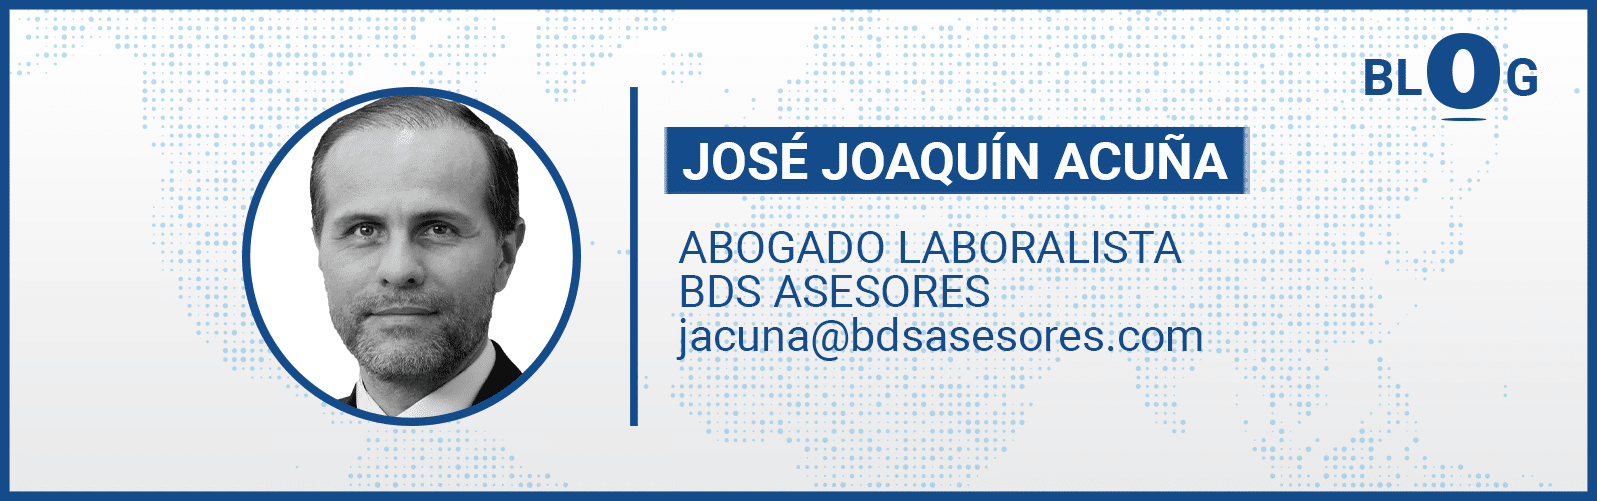 Jose Joaquín Acuña BDS Asesores